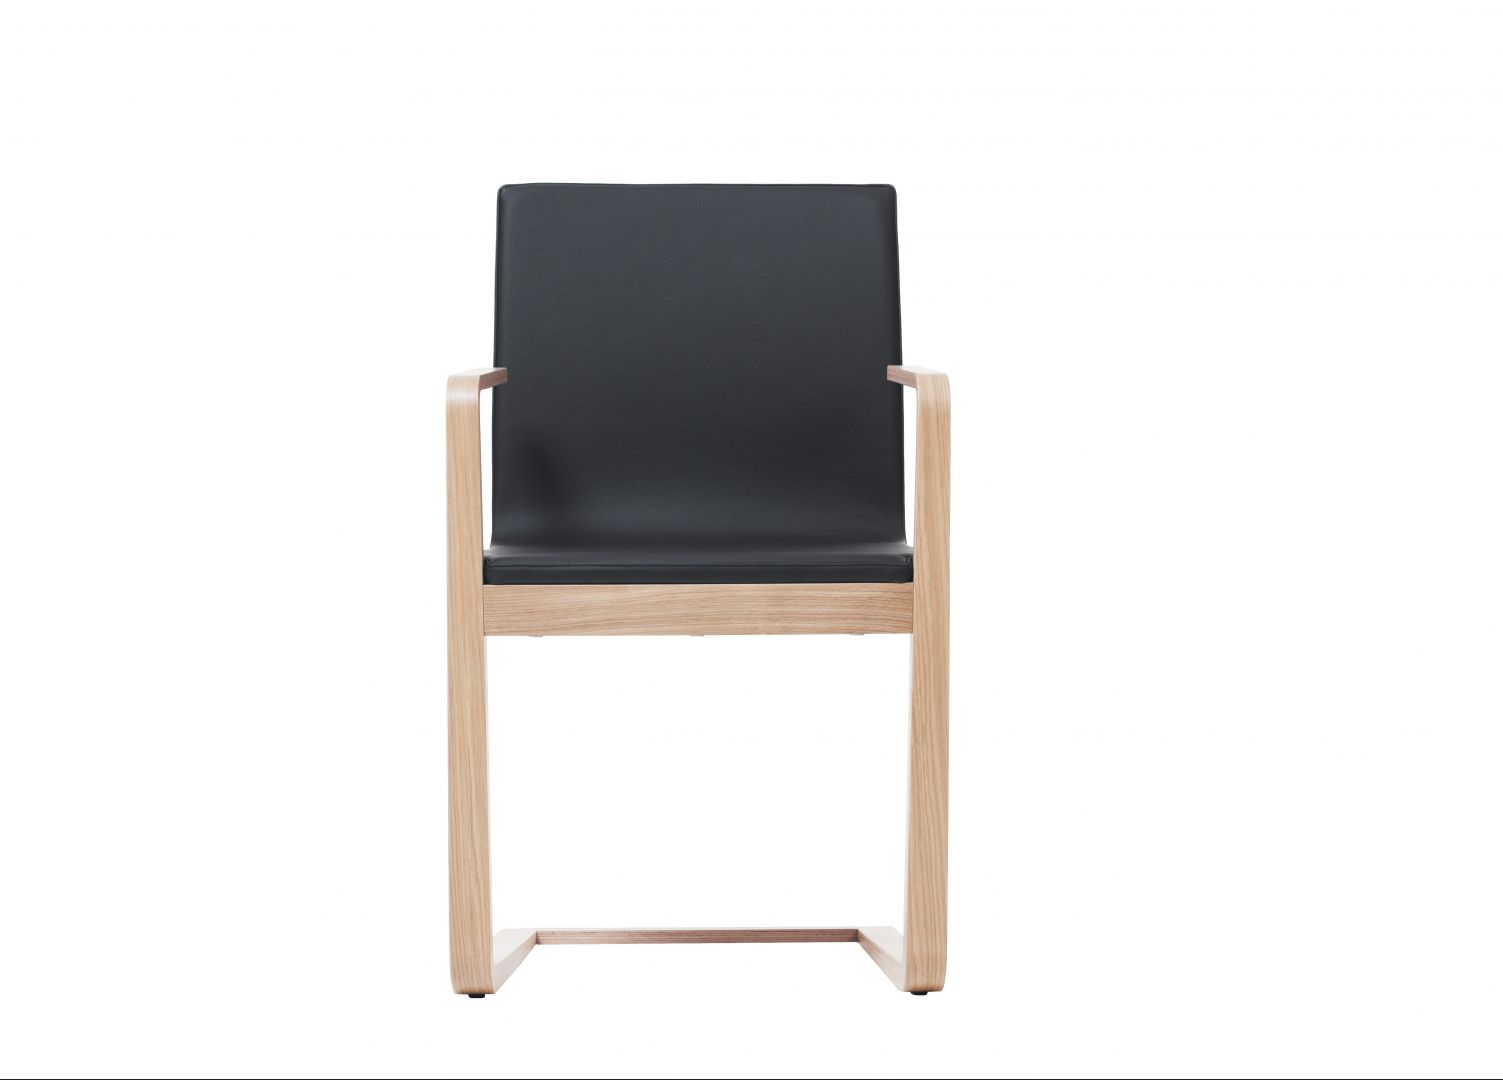 „Mojo“ (Ton) jest pierwszym, w całości drewnianym krzesłem do biura, zaprojektowanym przez słowackiego projektanta Michała Riabič. Z tym wzorem powraca wieloletnia tradycja gięcia drewna, którą firma wprowadziła do segmentu mebli biurowych. Fot. Ton